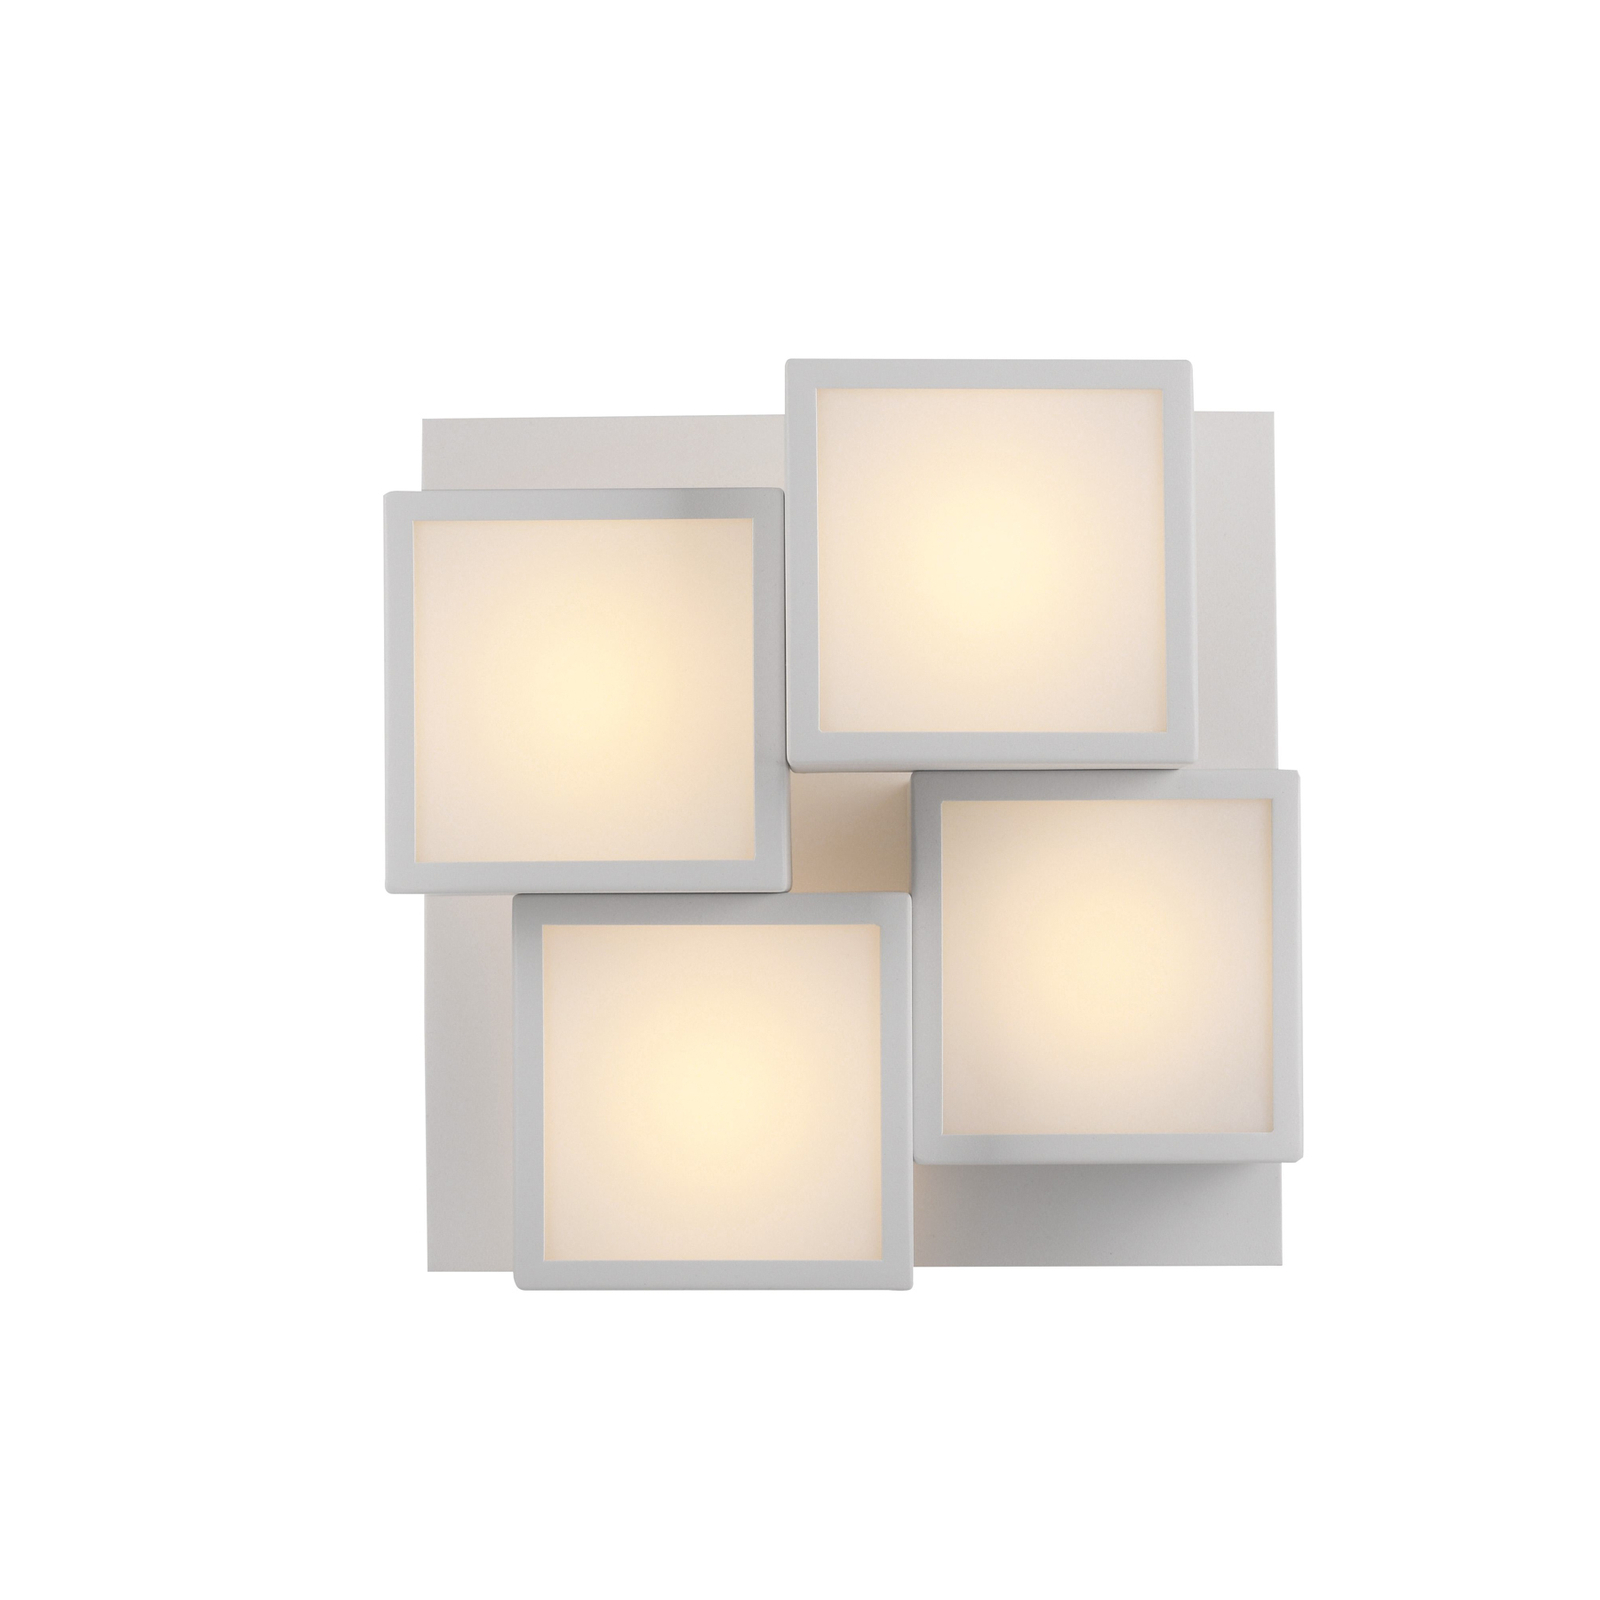 JUST LIGHT. LED ceiling light Tetris, iron, 3,000 K, white